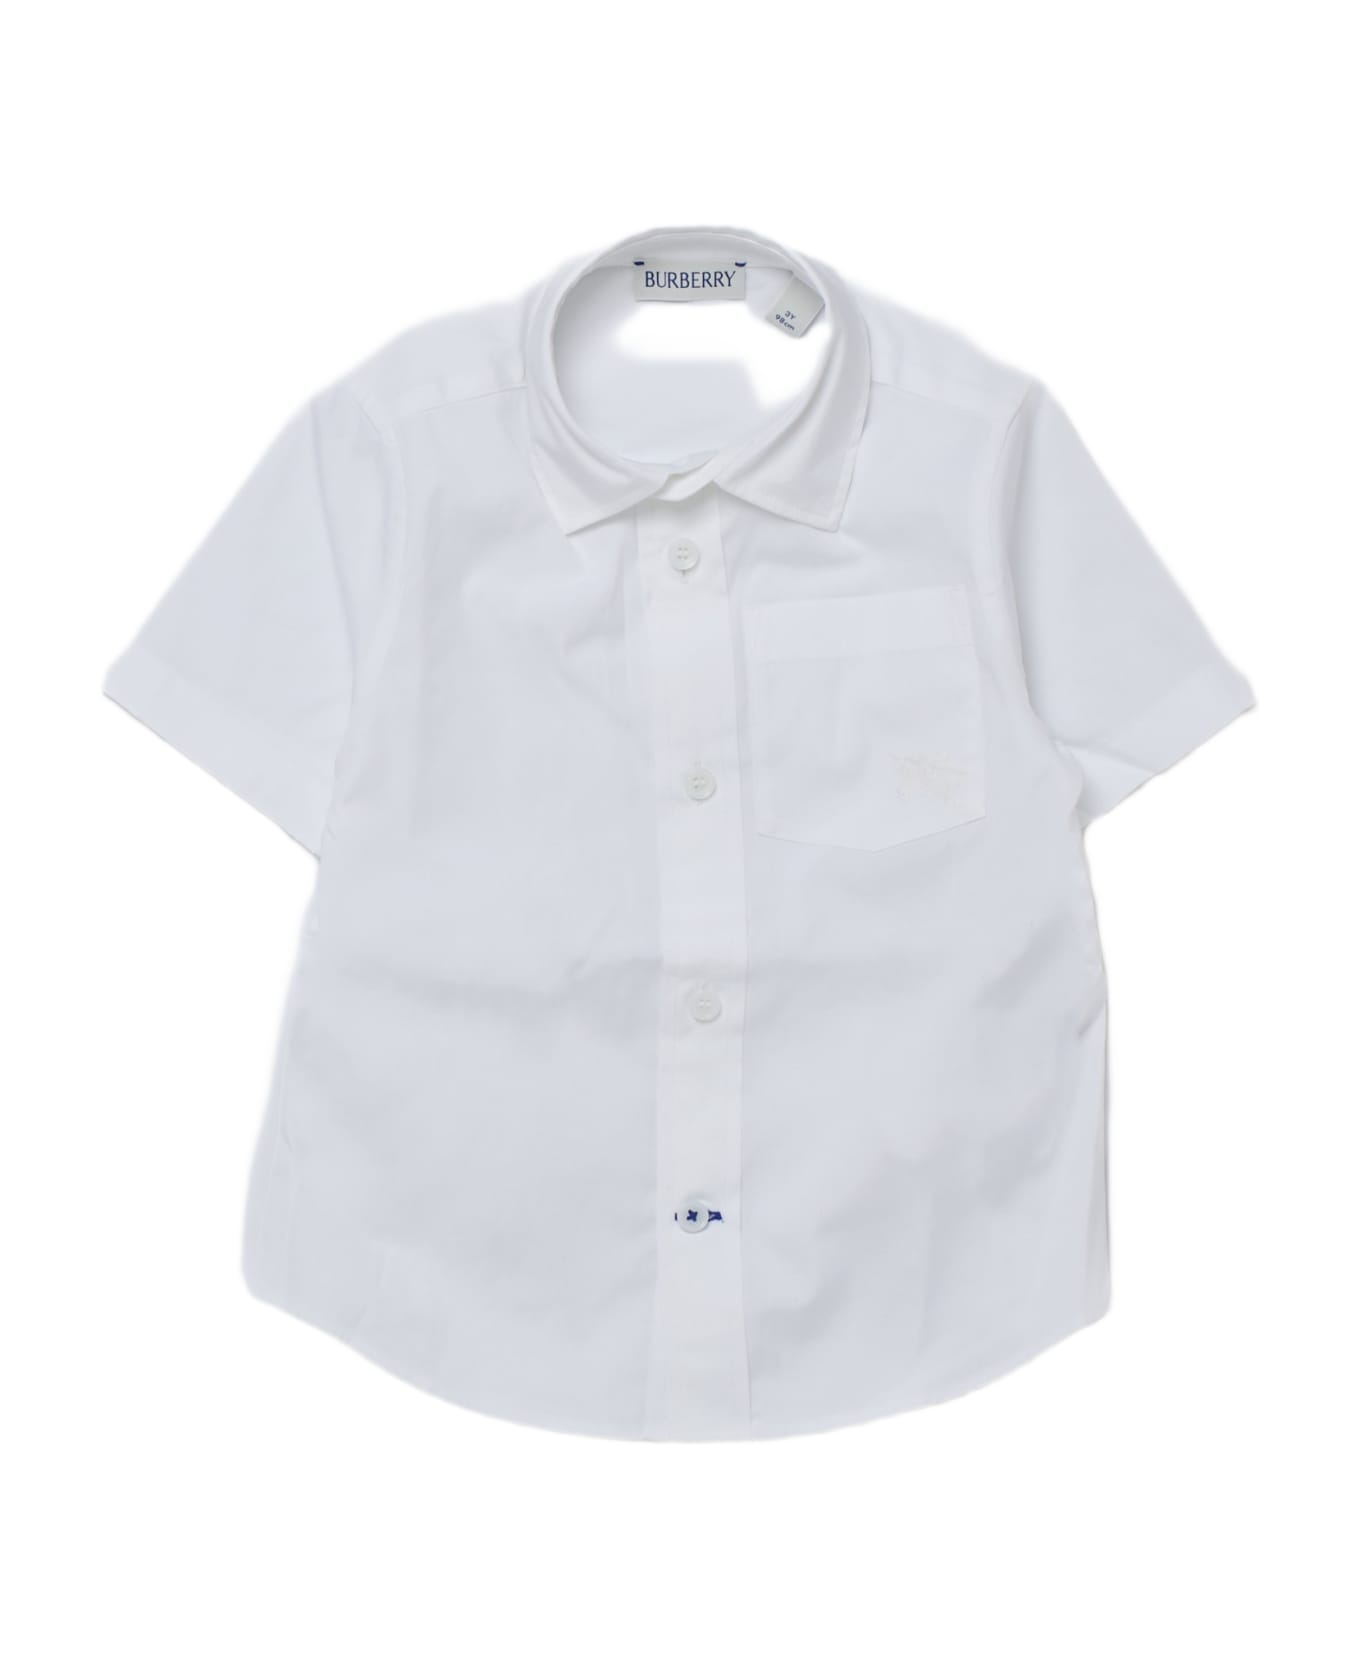 Burberry Owen Shirt Shirt - BIANCO シャツ